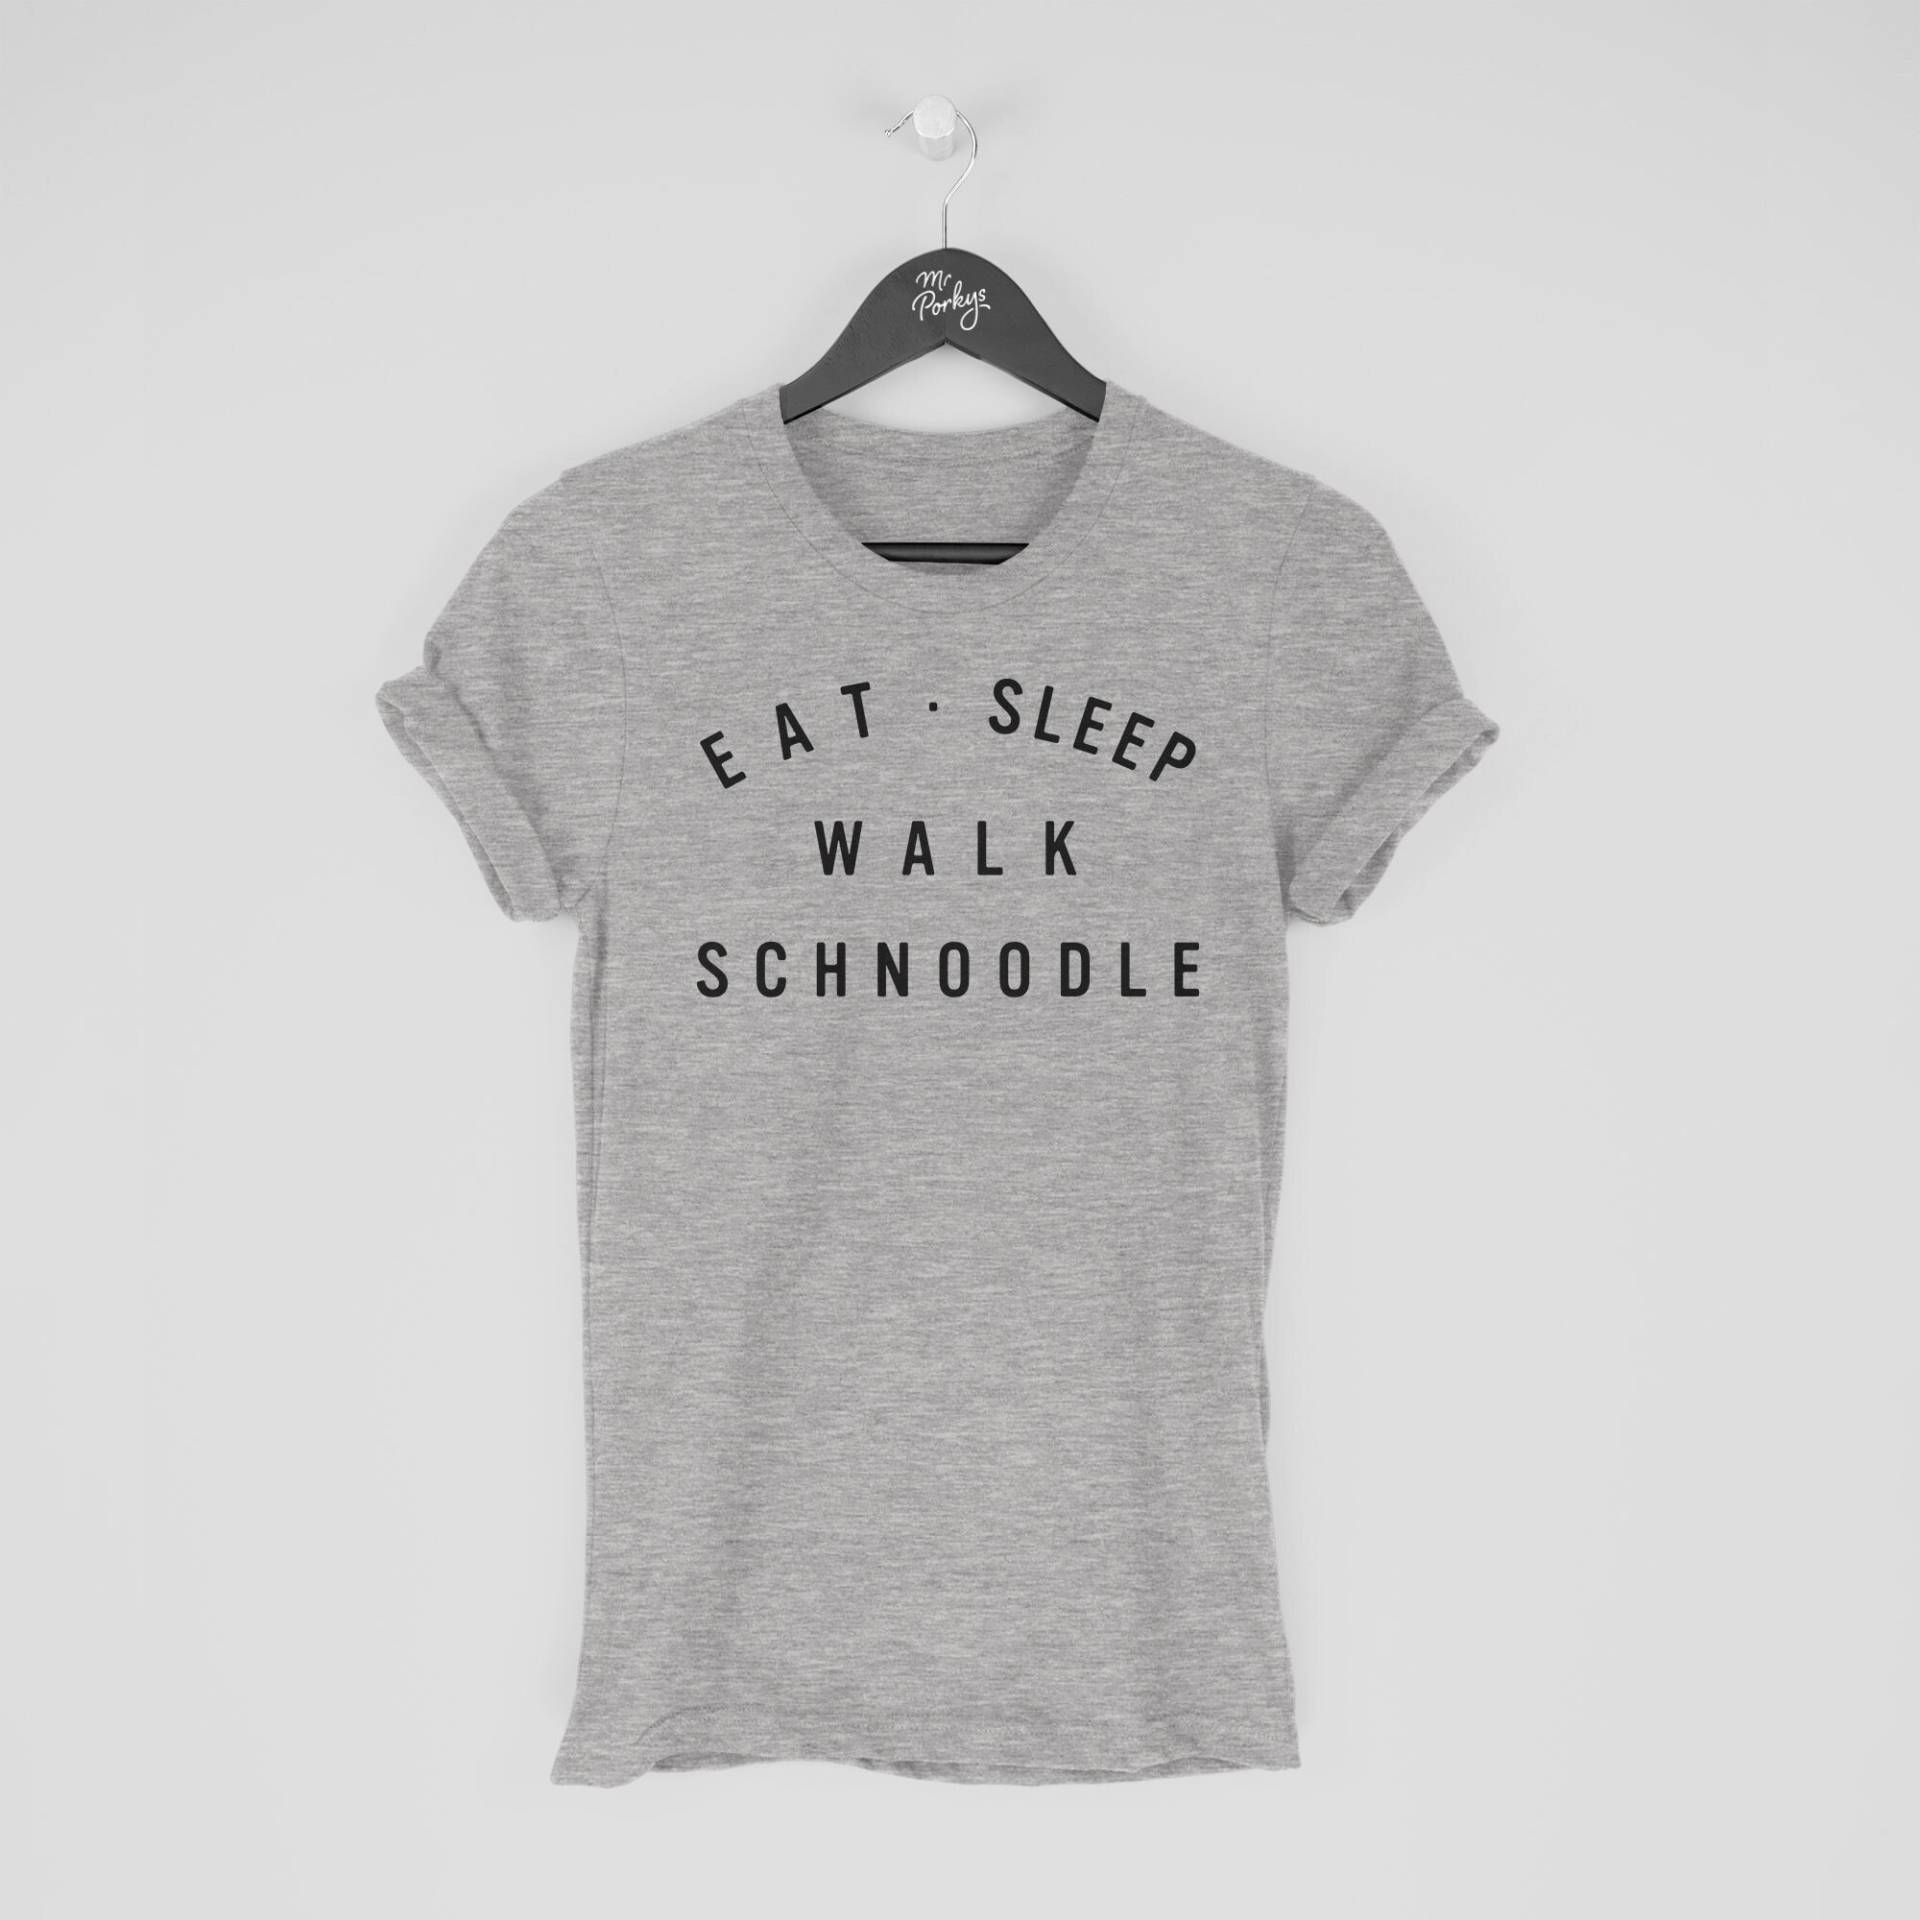 Schnoodle Shirt, Eat Sleep Walk T-Shirt, Geschenk Für Besitzer, Tshirt von MrPorkysGiftShop